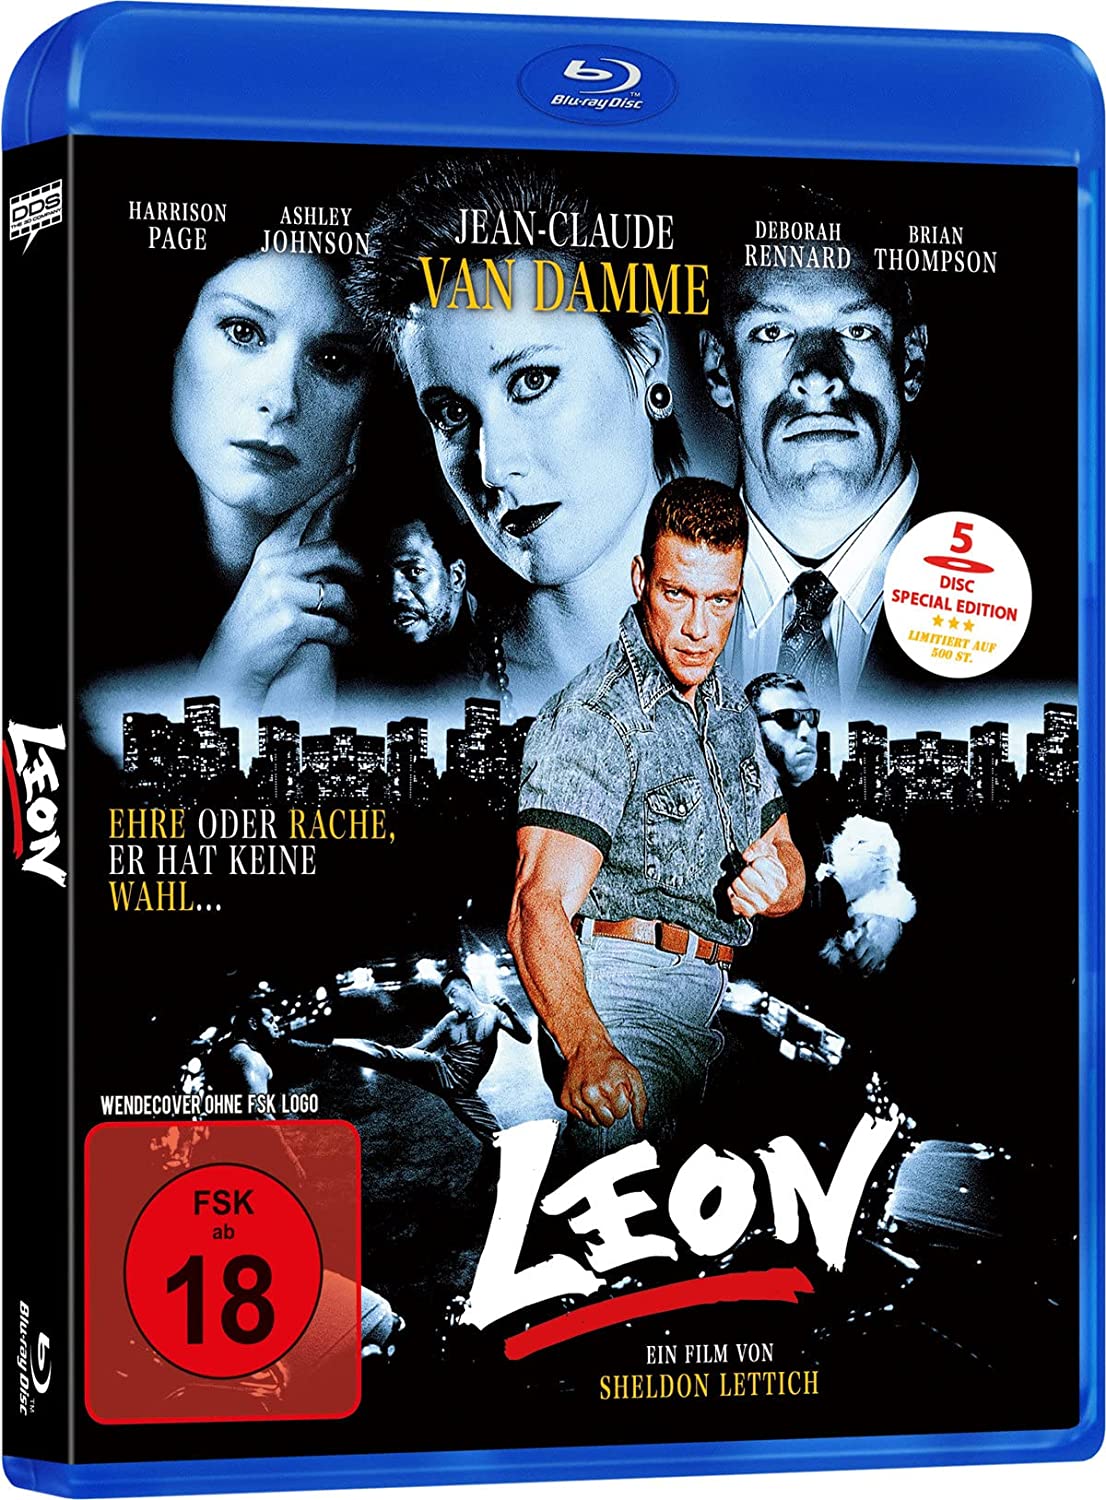 Leon - Special Edition - Limitiert auf 400 Stück (Blu-ray + DVD + 3 Bonus-DVDs)